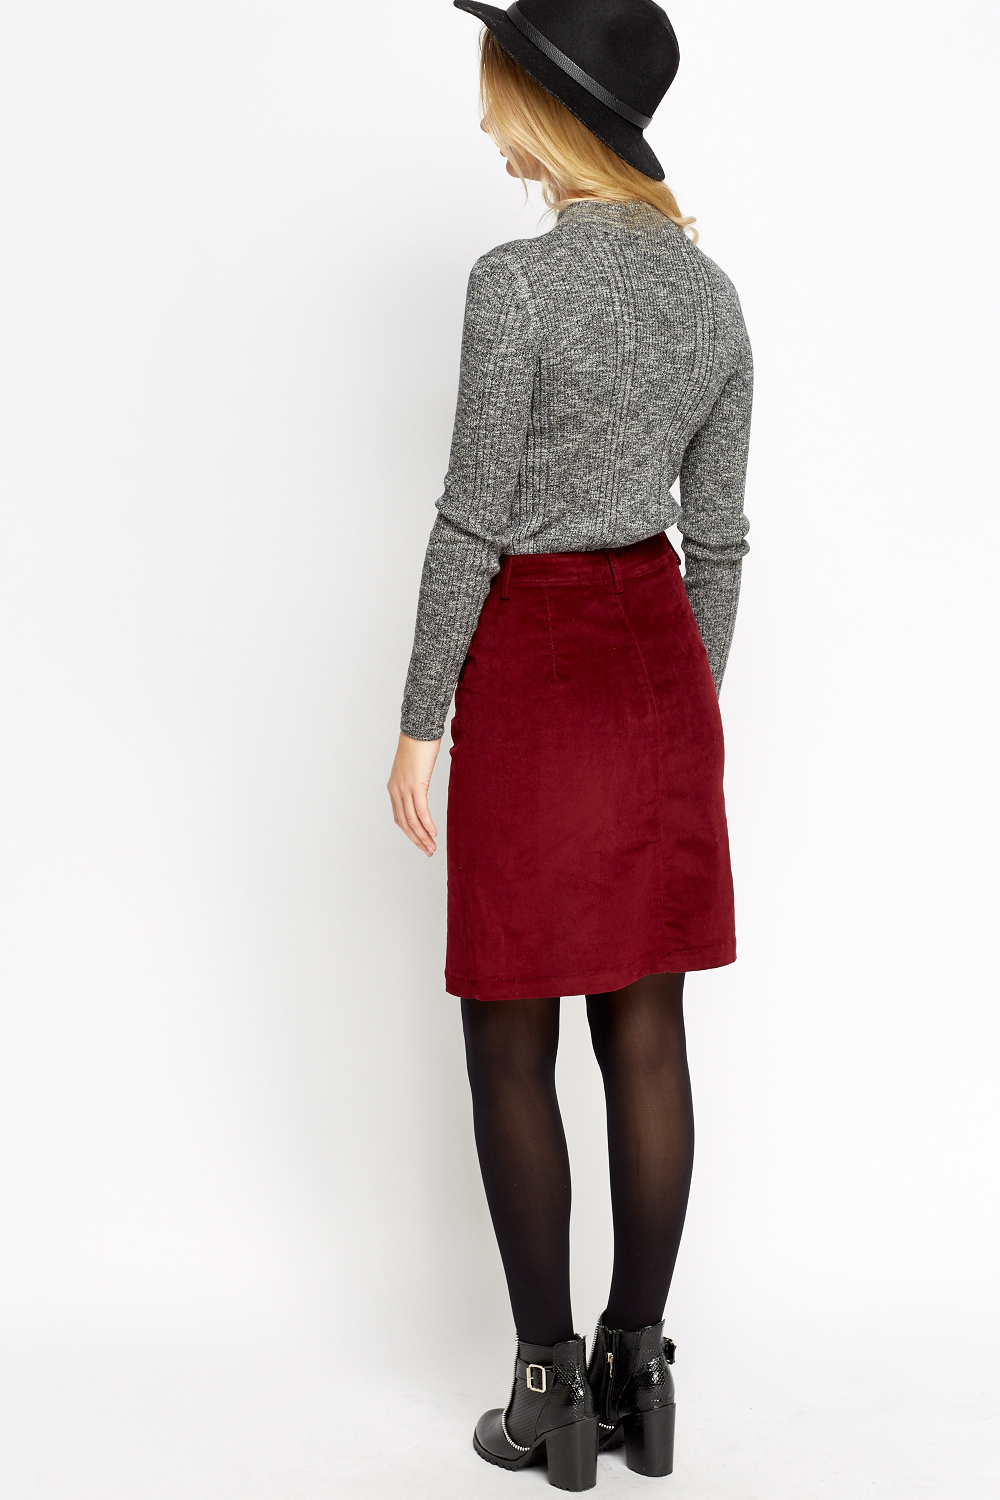 Burgundy Button Up Skirt - Just $7